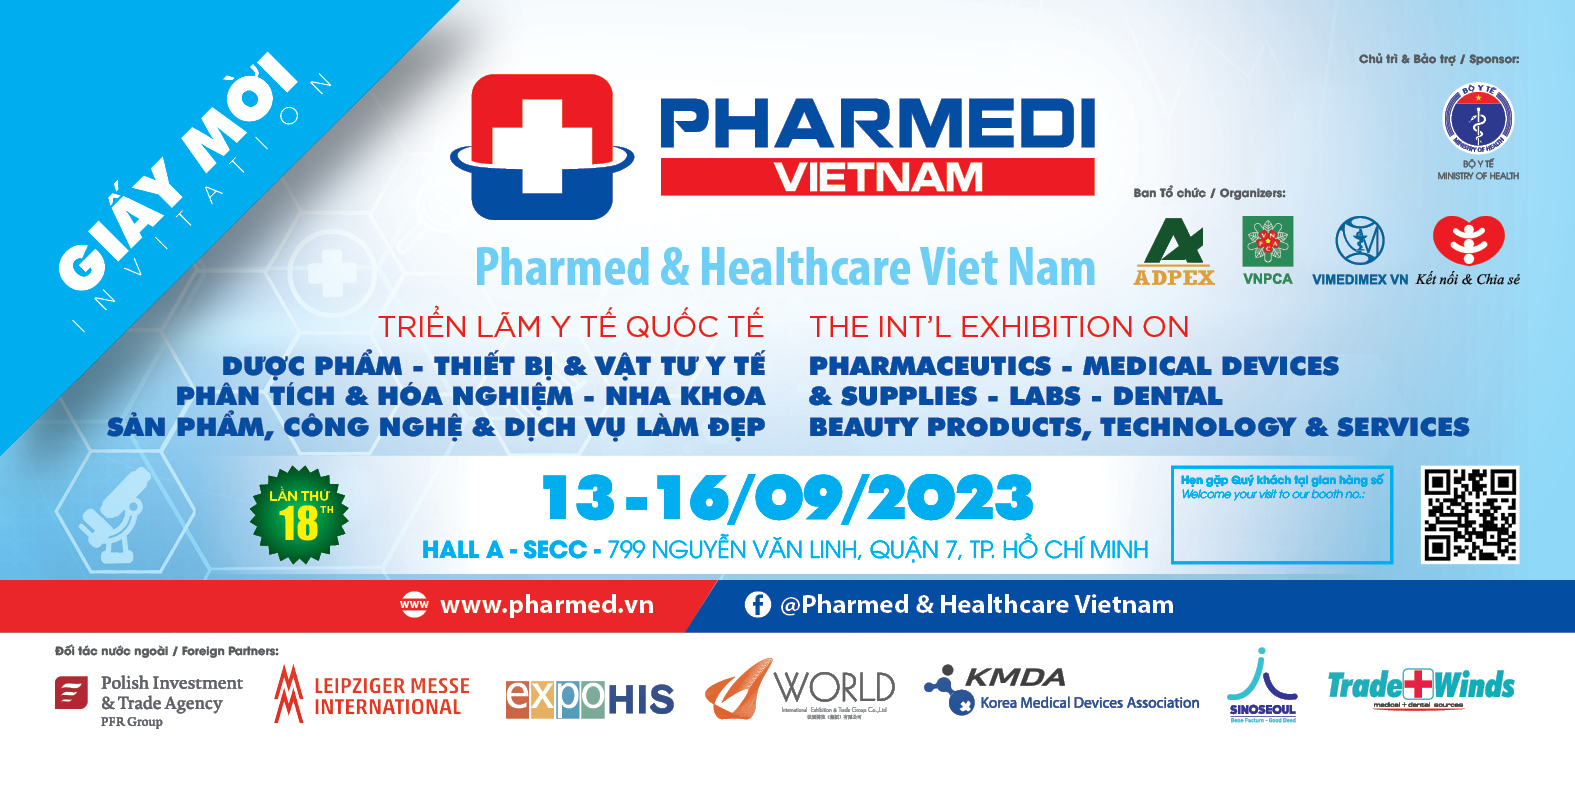 Sắp diễn ra Triển lãm Y tế Quốc tế Việt Nam - Pharmedi Vietnam 2023